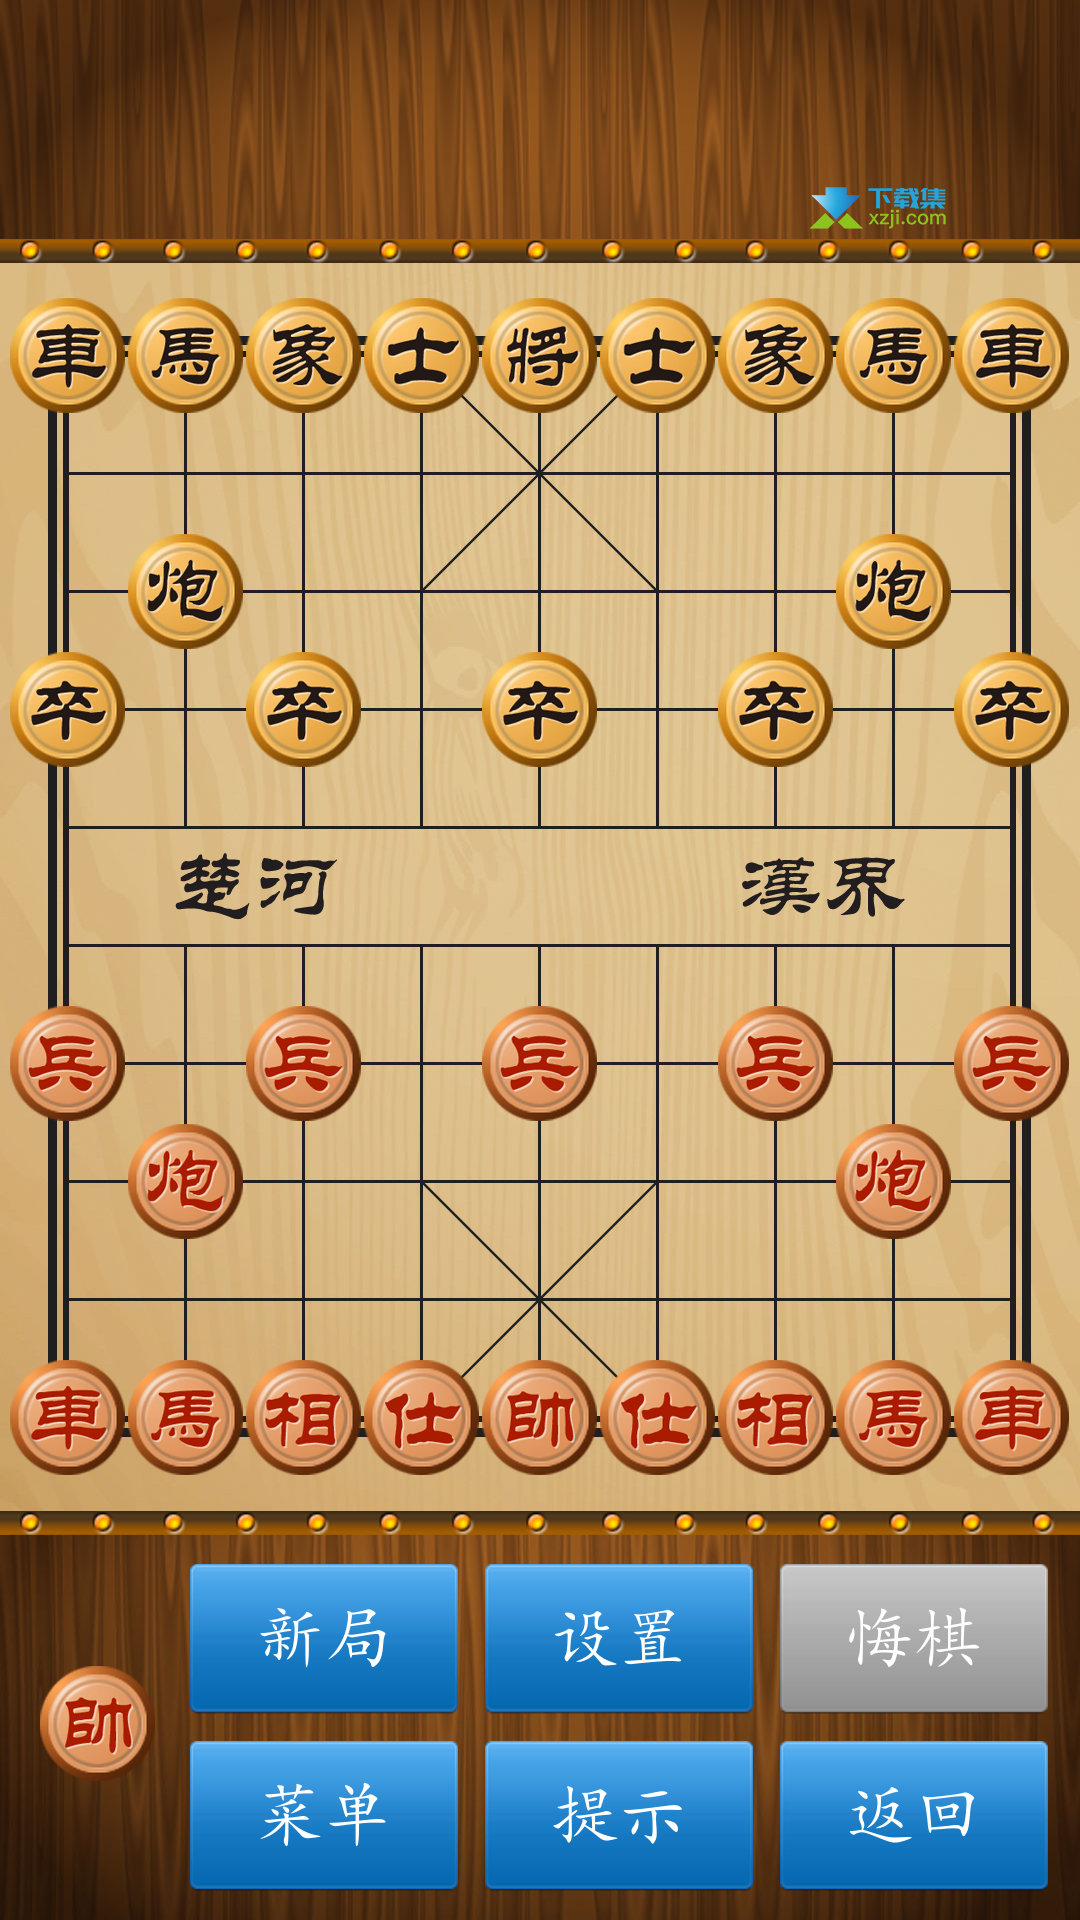 中国象棋界面1